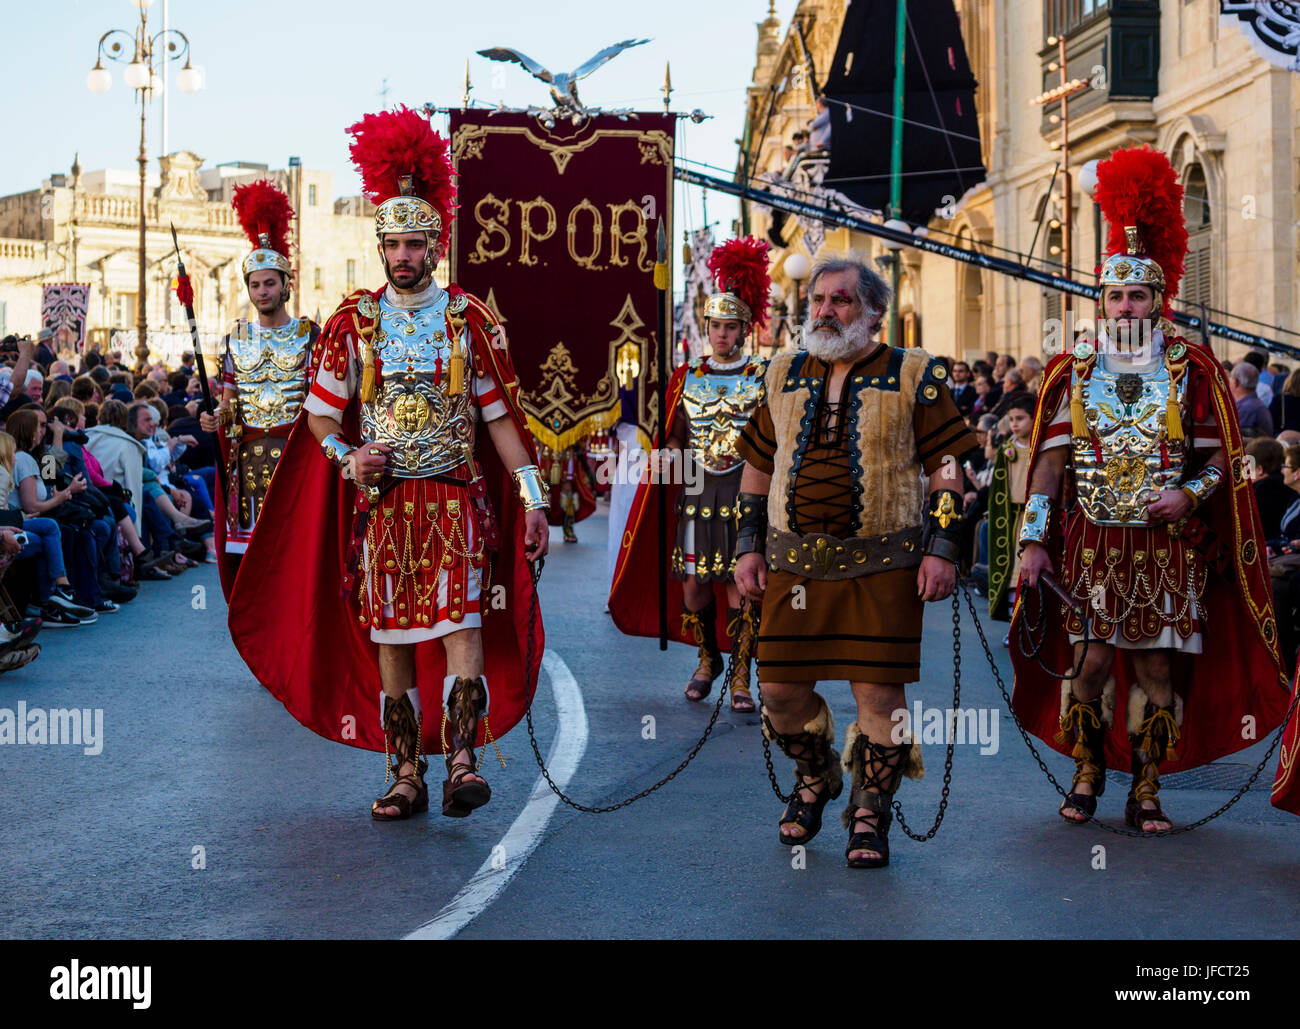 Habitantes de Zejtun / Malta tuvo su tradicional procesión del Viernes santo en frente de su iglesia, algunos de ellos vestidos como legionarios romanos Foto de stock